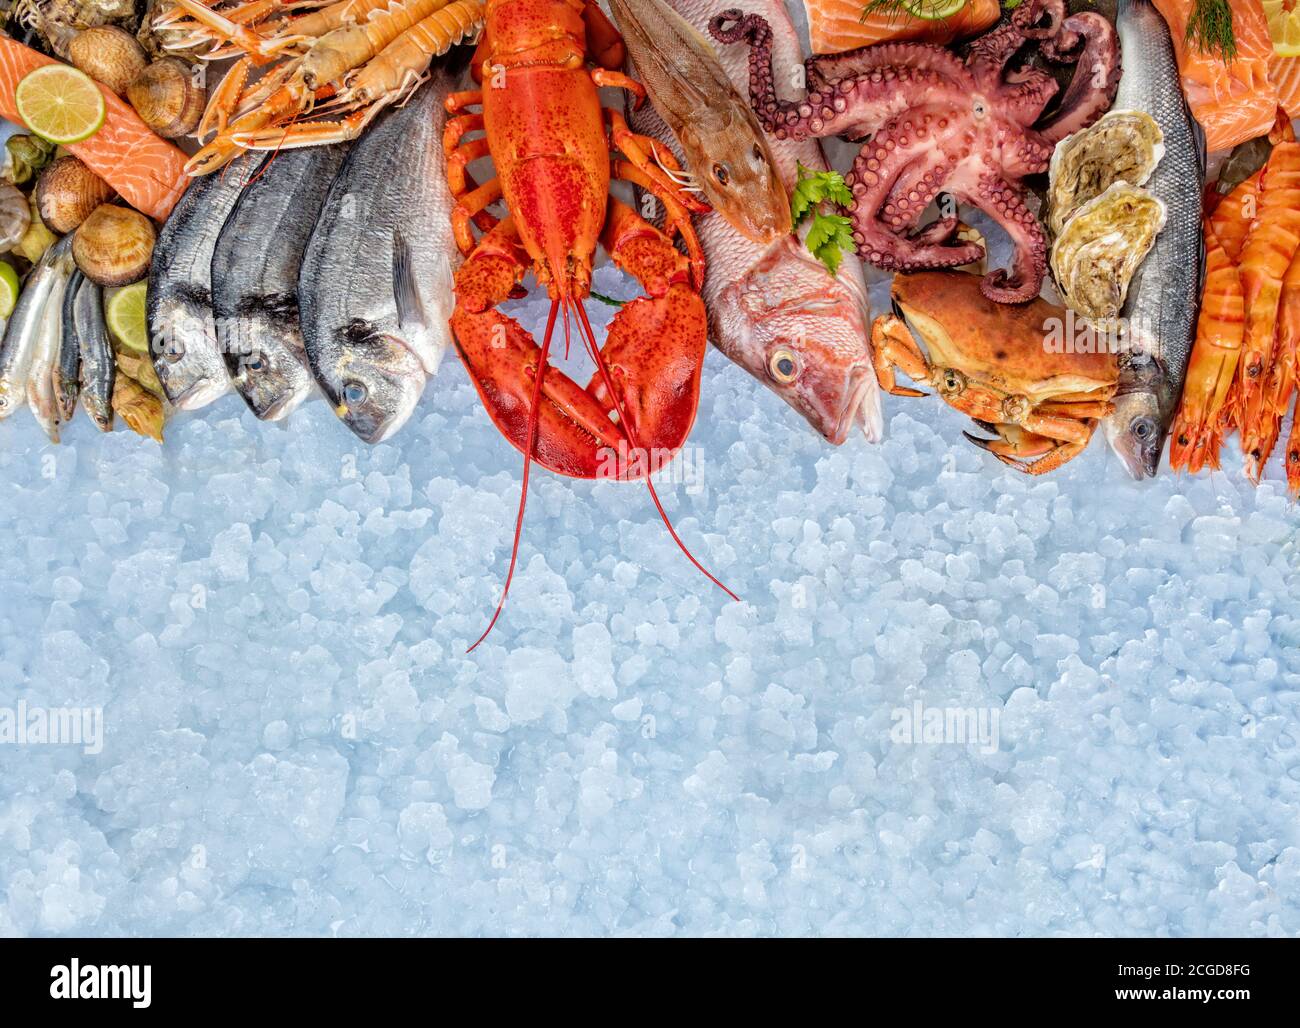 Aragosta intera con frutti di mare, granchio, gamberi, pesce, bistecca di salmone, polpo, ostriche e altre conchiglie servite su ghiaccio tritato. Foto Stock